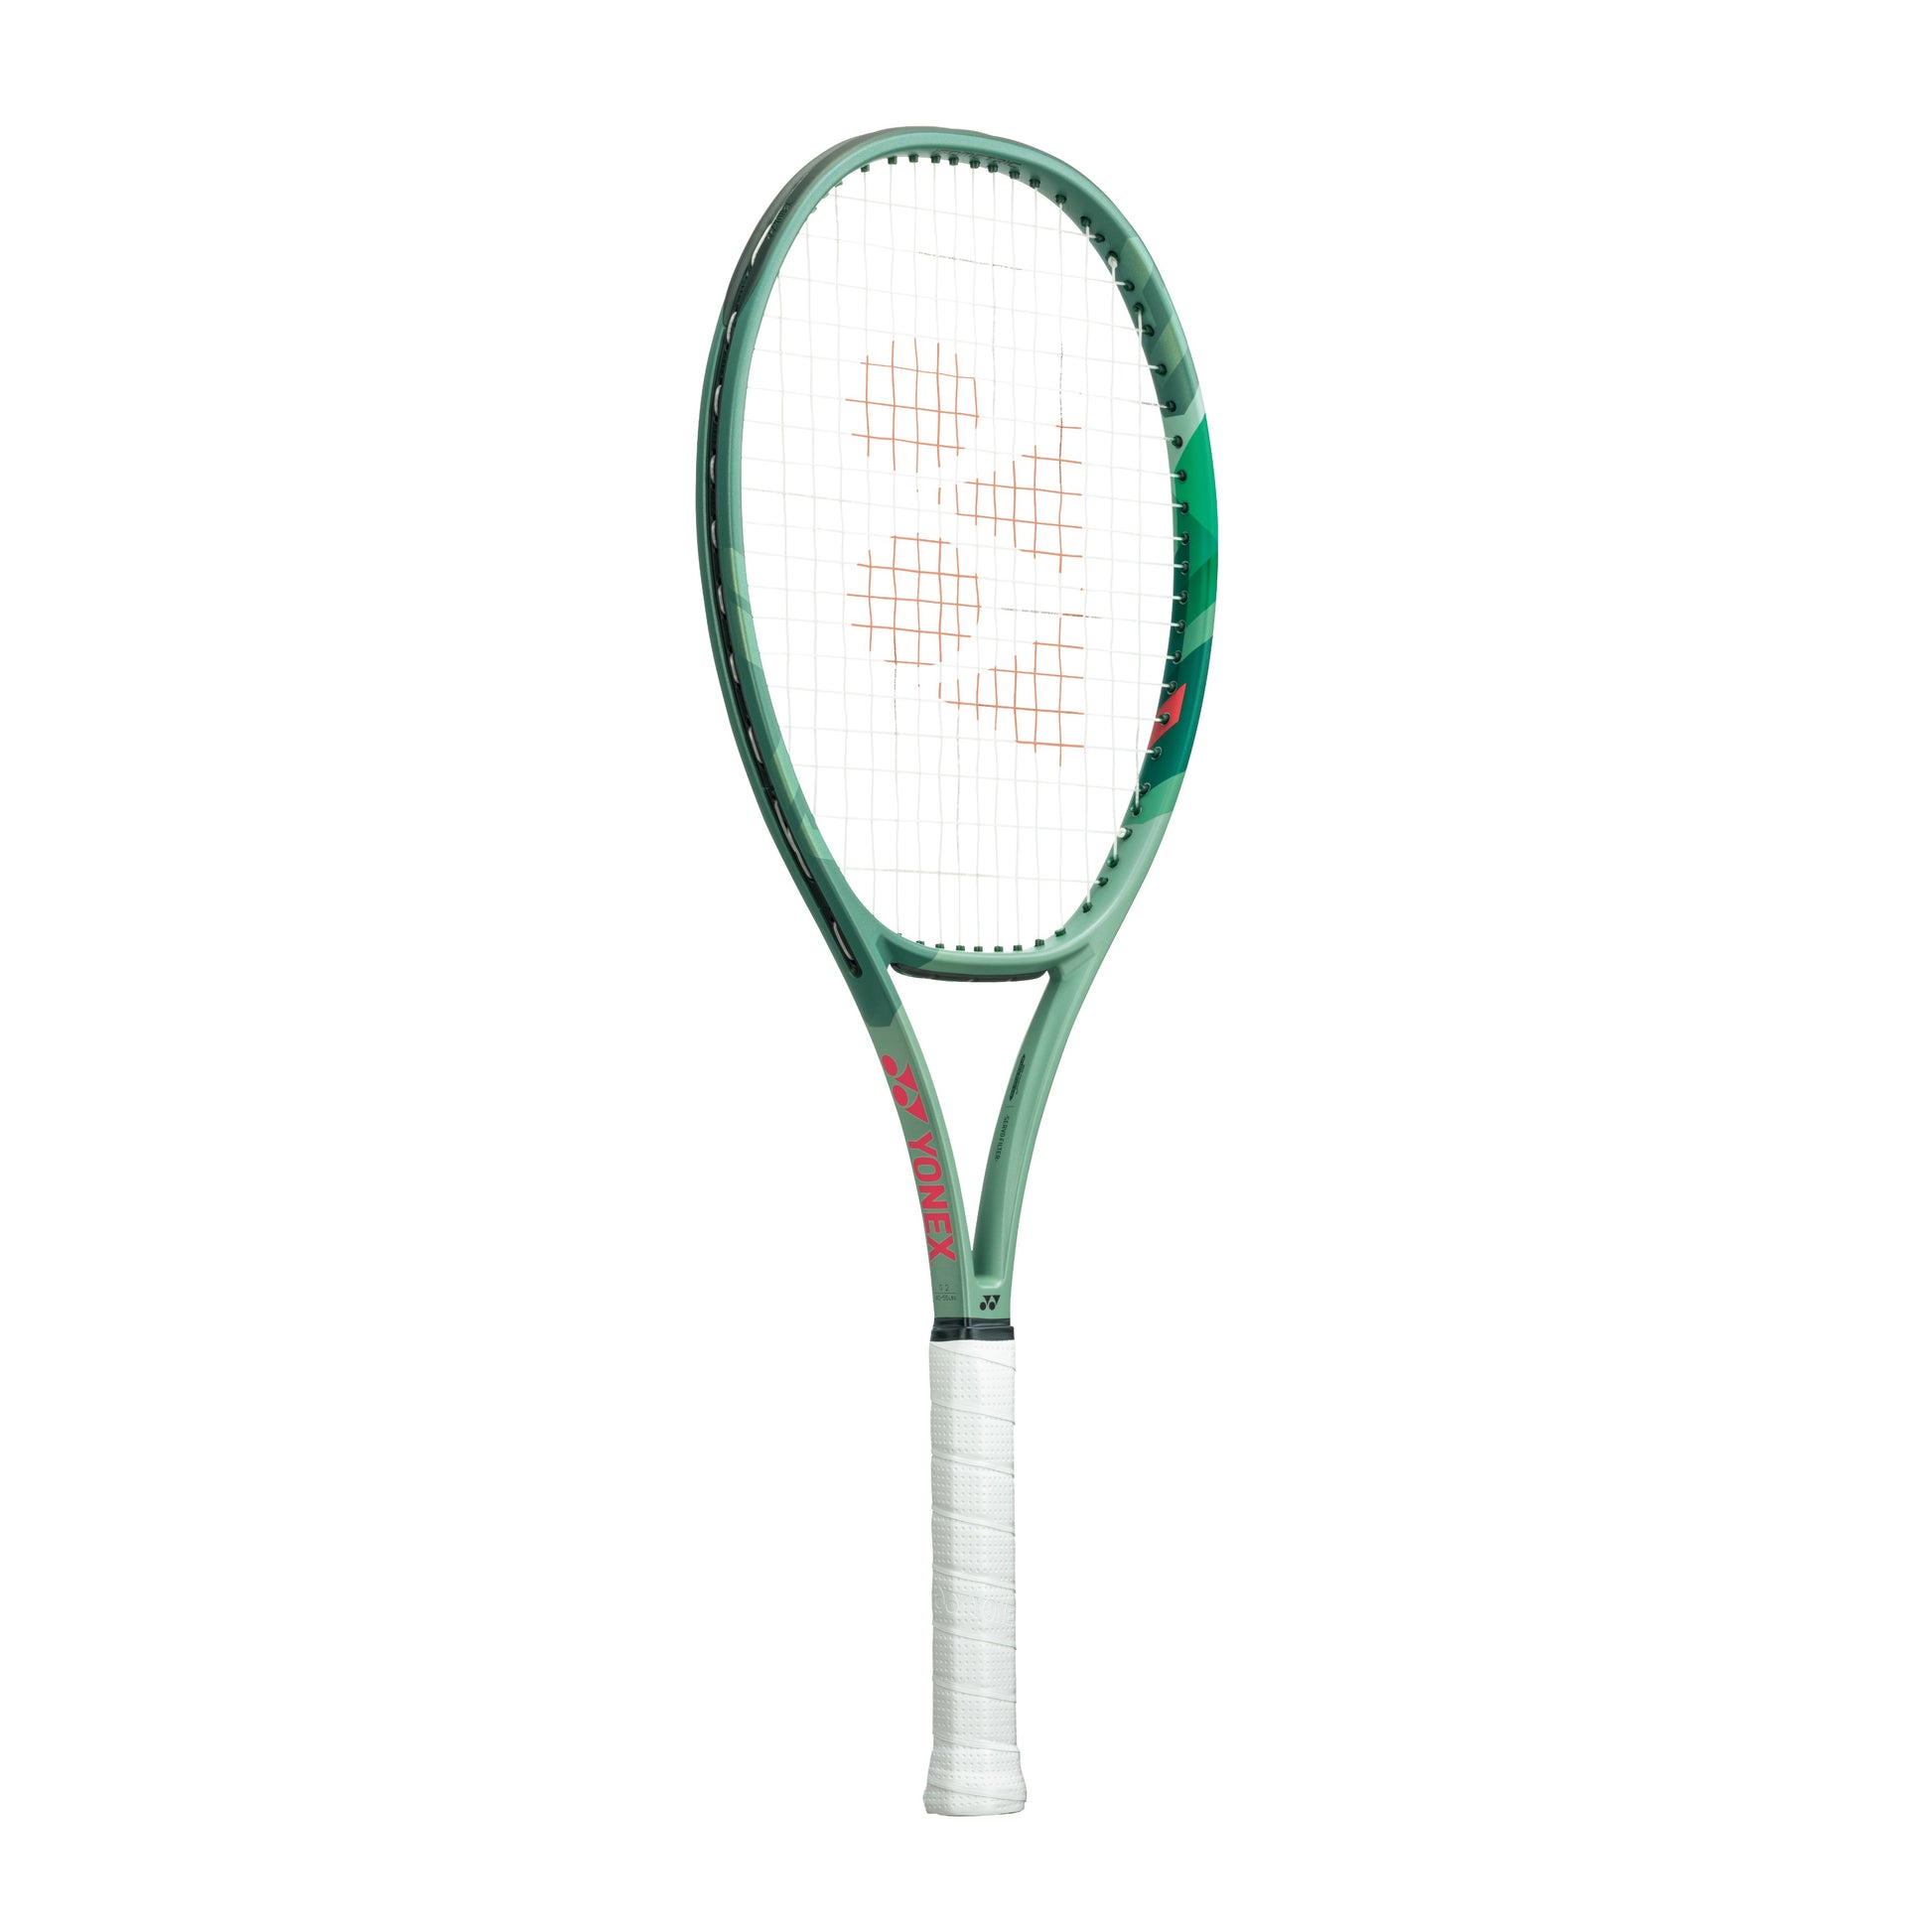 Yonex Percept 100L Unstrung Tennis Racquet, 280Grams - Best Price online Prokicksports.com